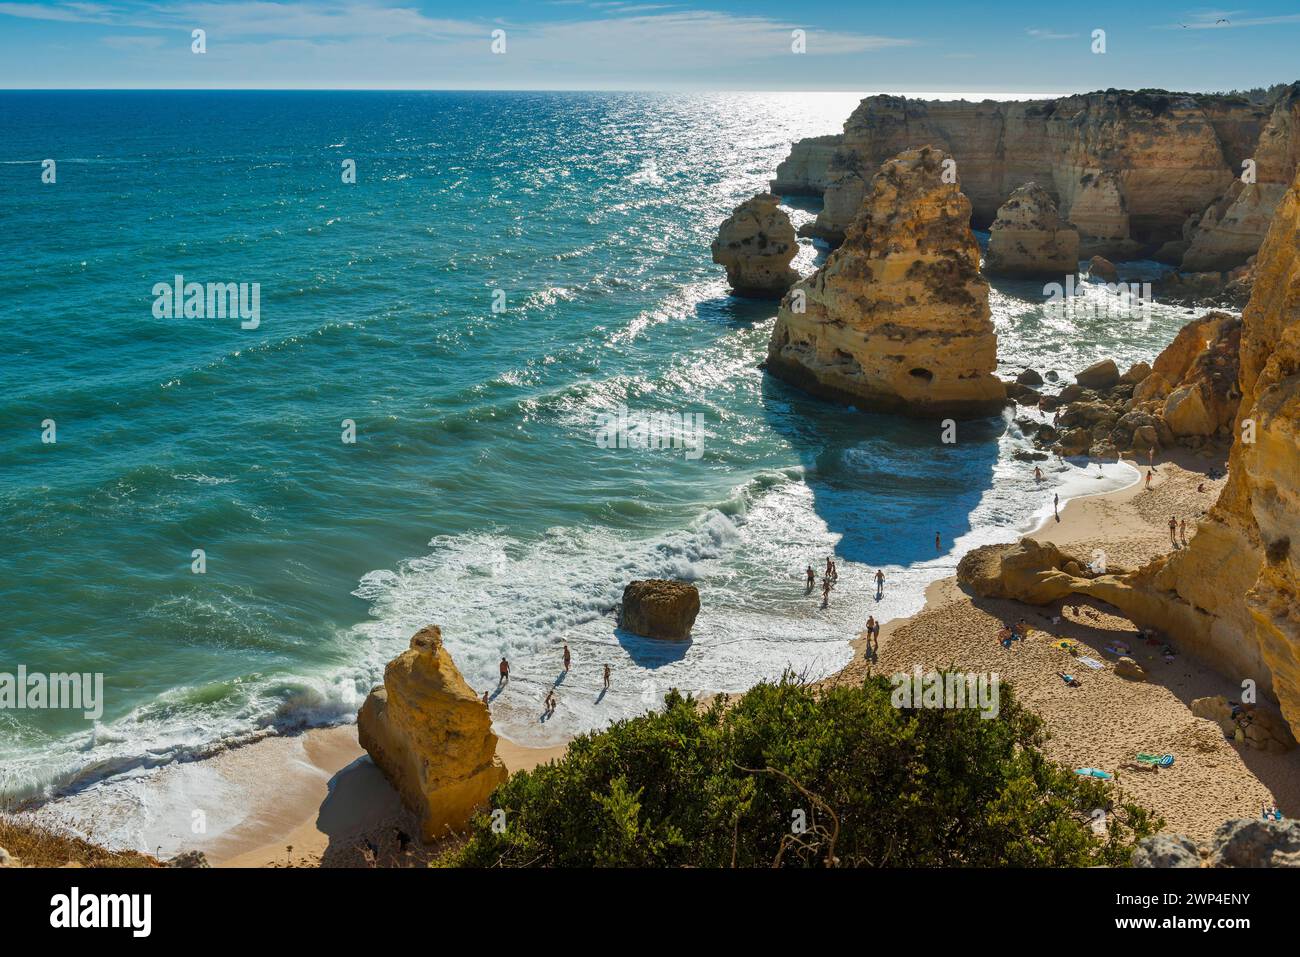 Spiaggia, spiaggia in Algarve, vacanze estive, meteo, soleggiato, Atlantico, spiaggia, vacanze al mare, vacanze estive, viaggi, vacanze, turismo, natura Foto Stock